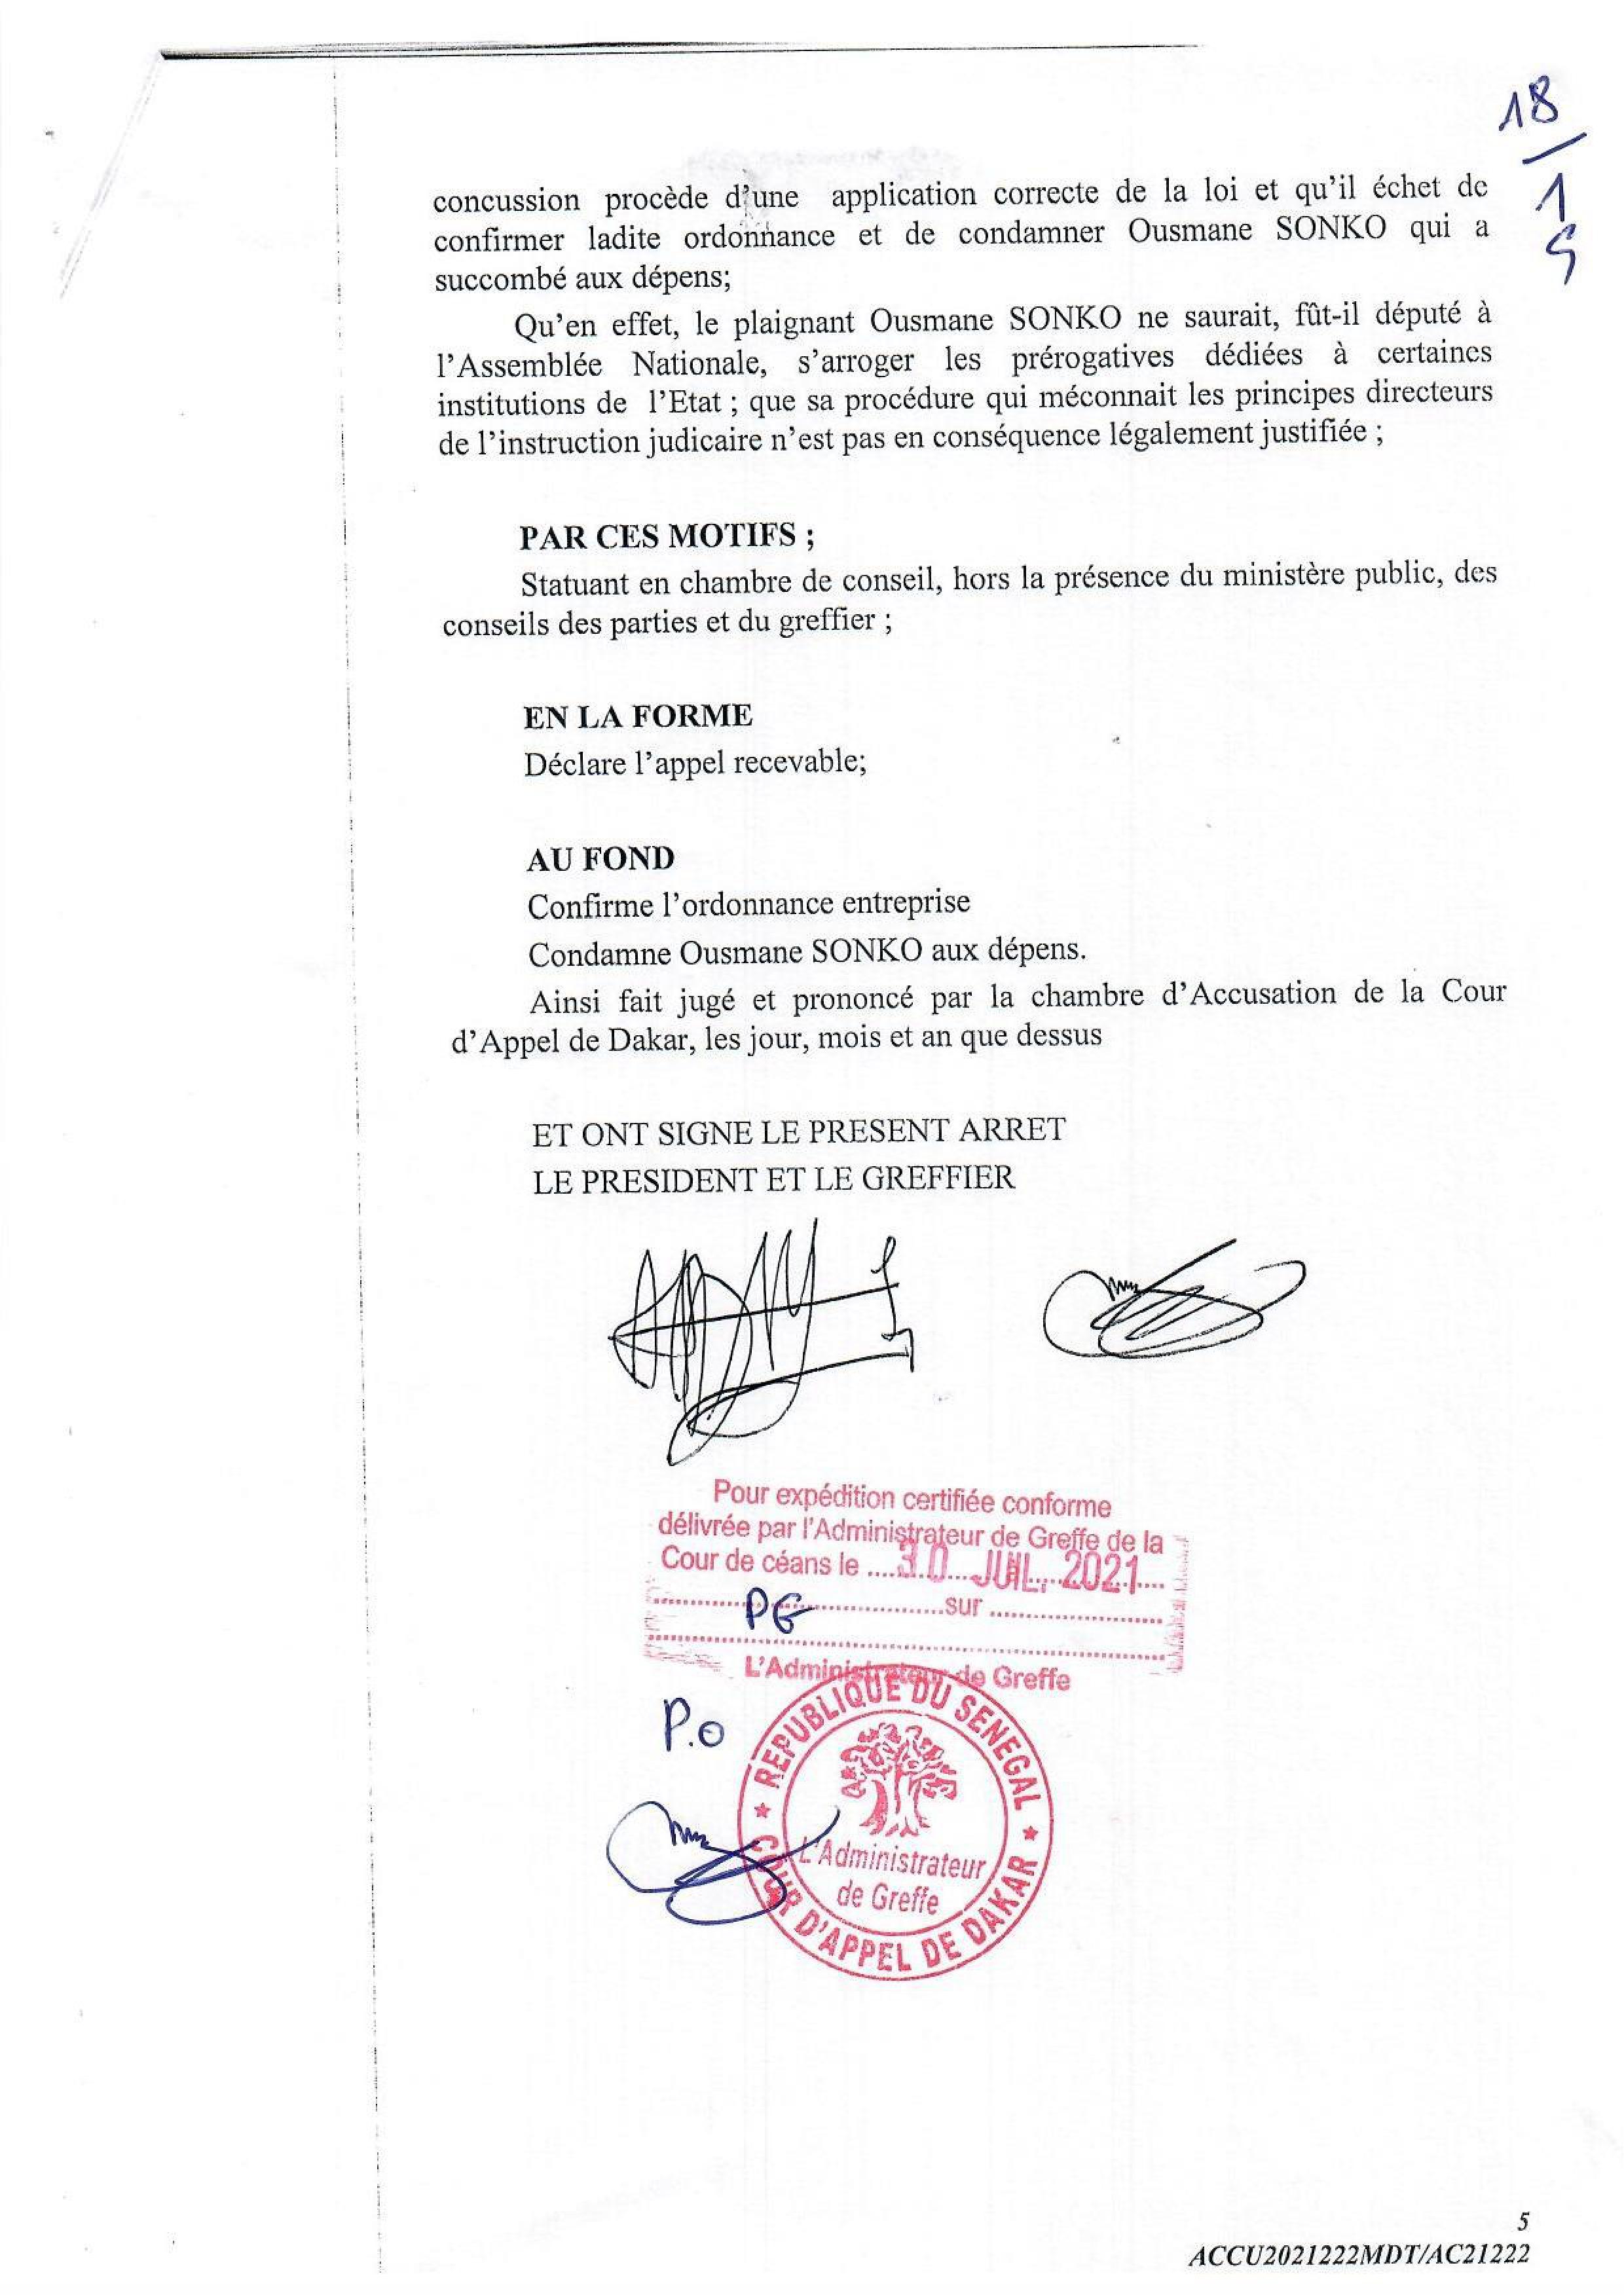 Ousmane Sonko perd la bataille des 94 milliards FCfa (Documents)